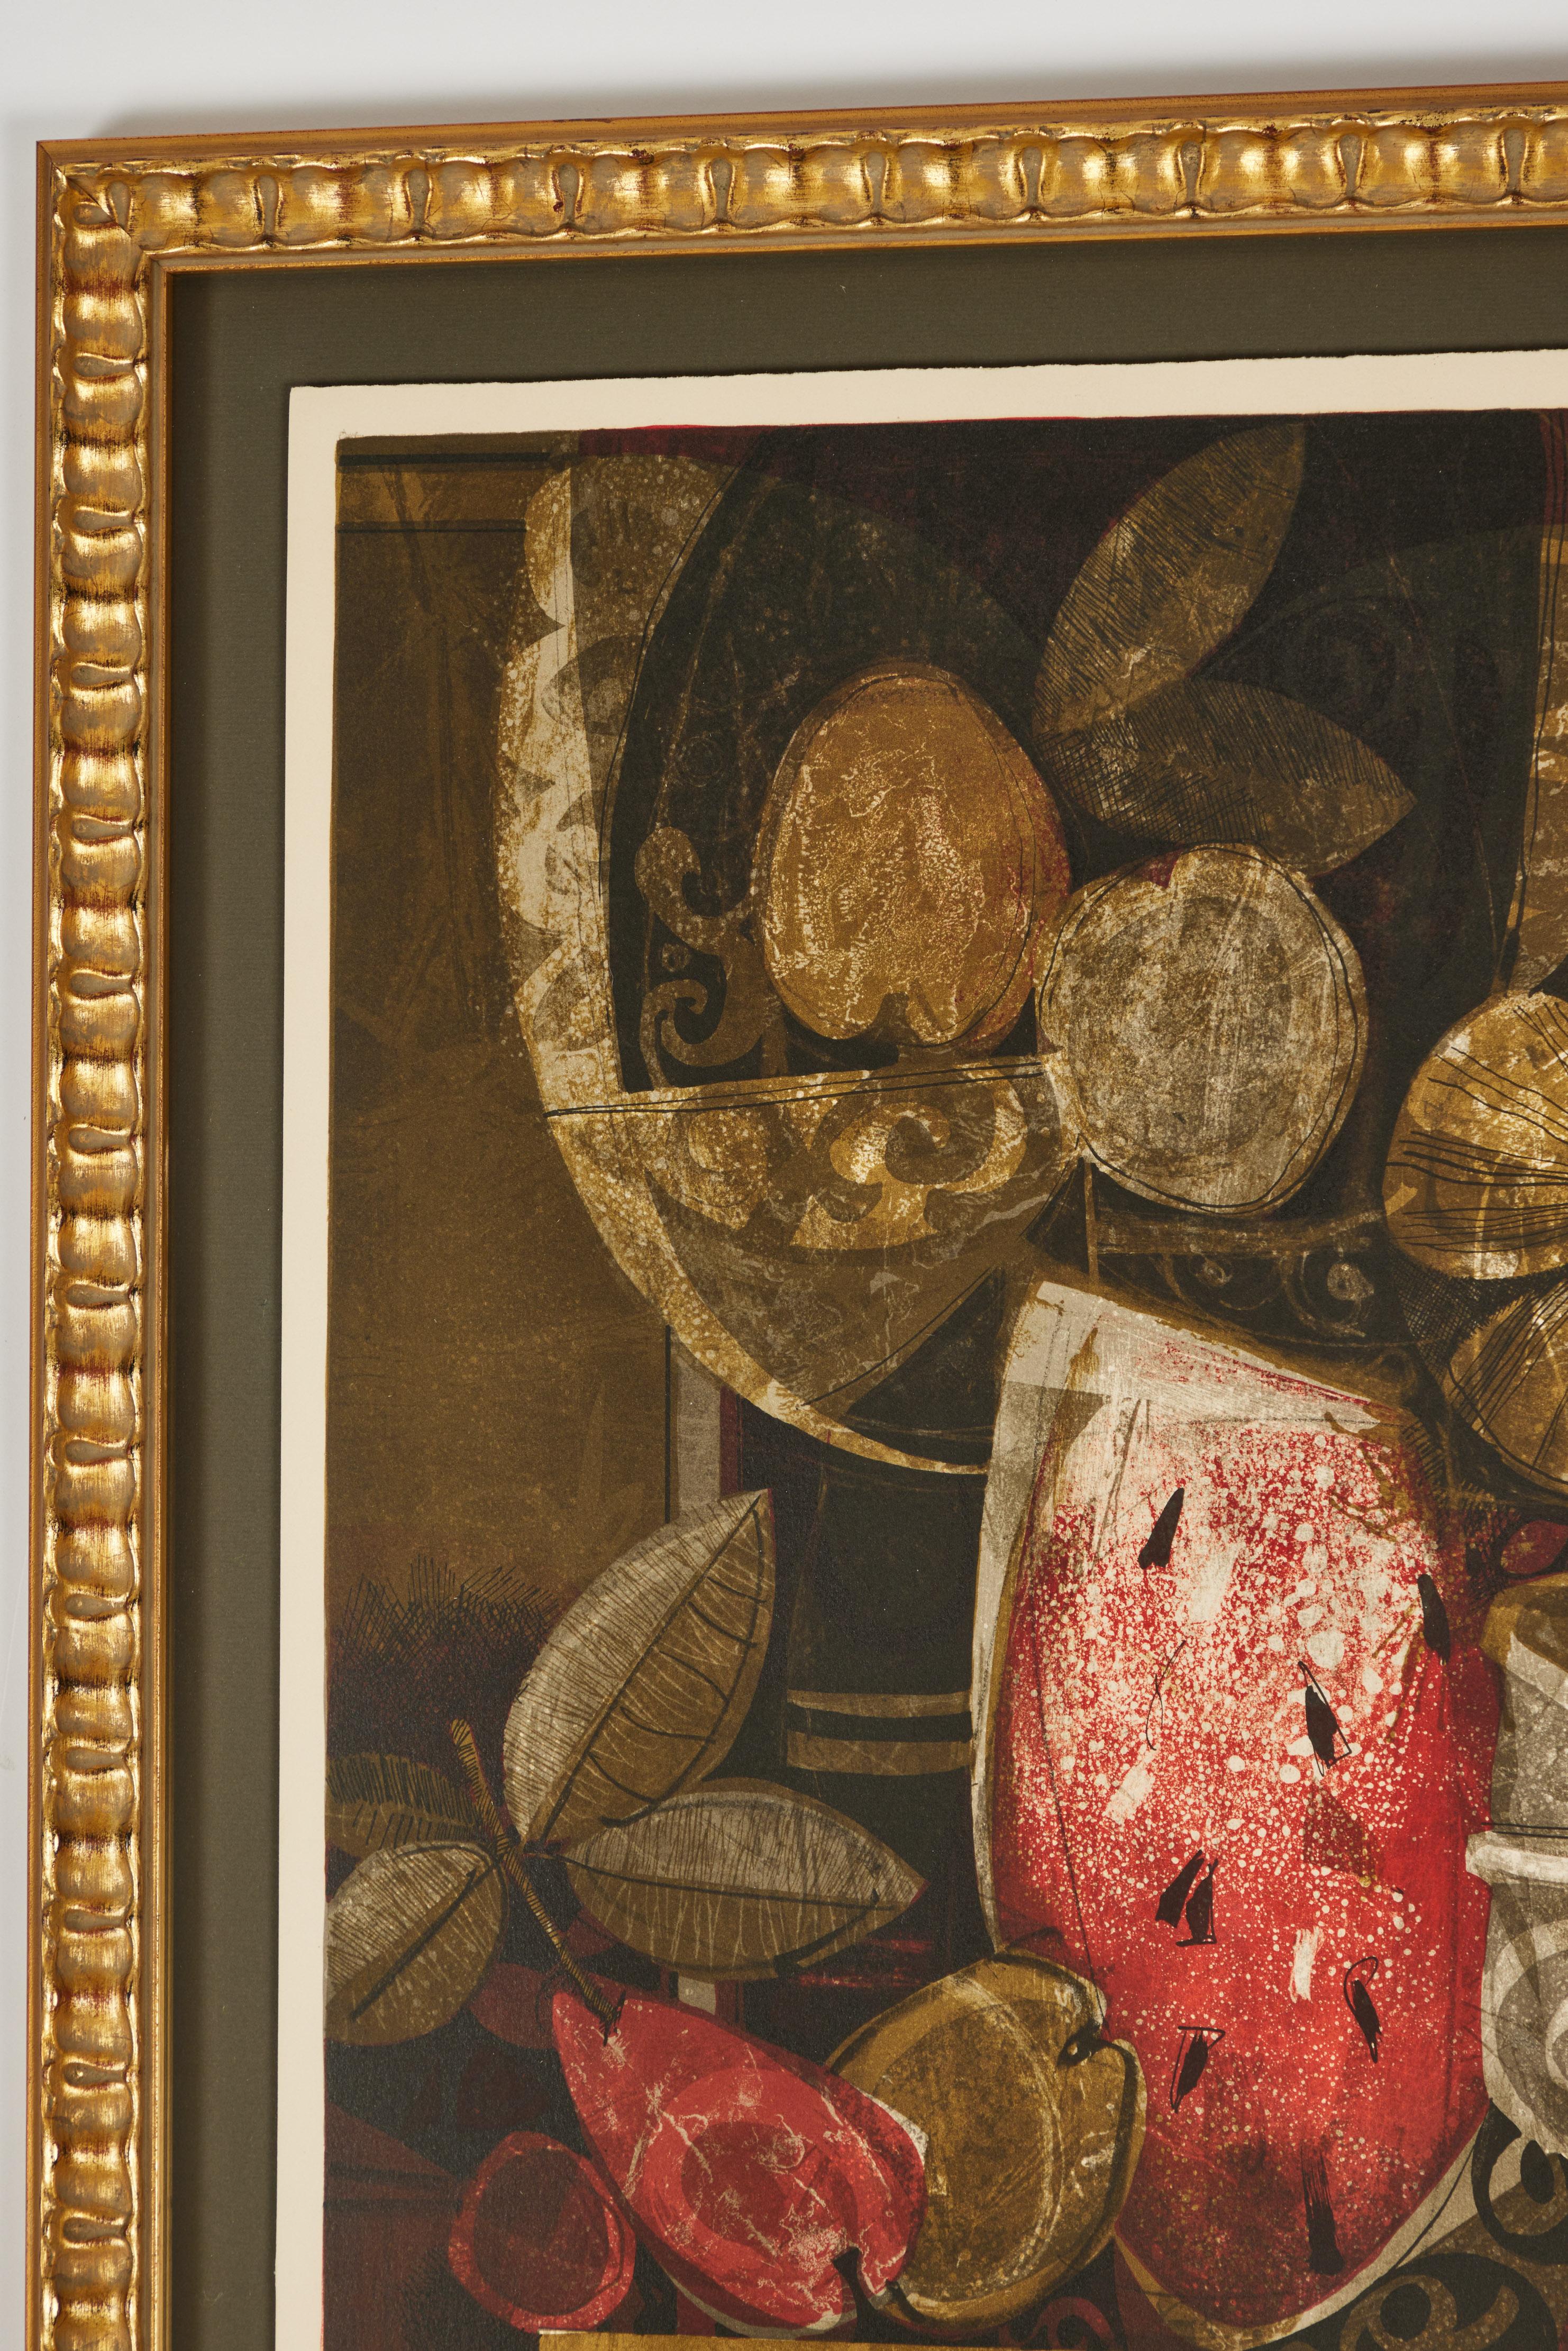 Diese fabelhafte Lithographie in limitierter Auflage aus der Mitte des Jahrhunderts stammt von dem spanischen Künstler Alvar.
Es handelt sich um ein komplexes, aber verlockendes Stillleben mit Wassermelone und Blumen, das durch seine großartige